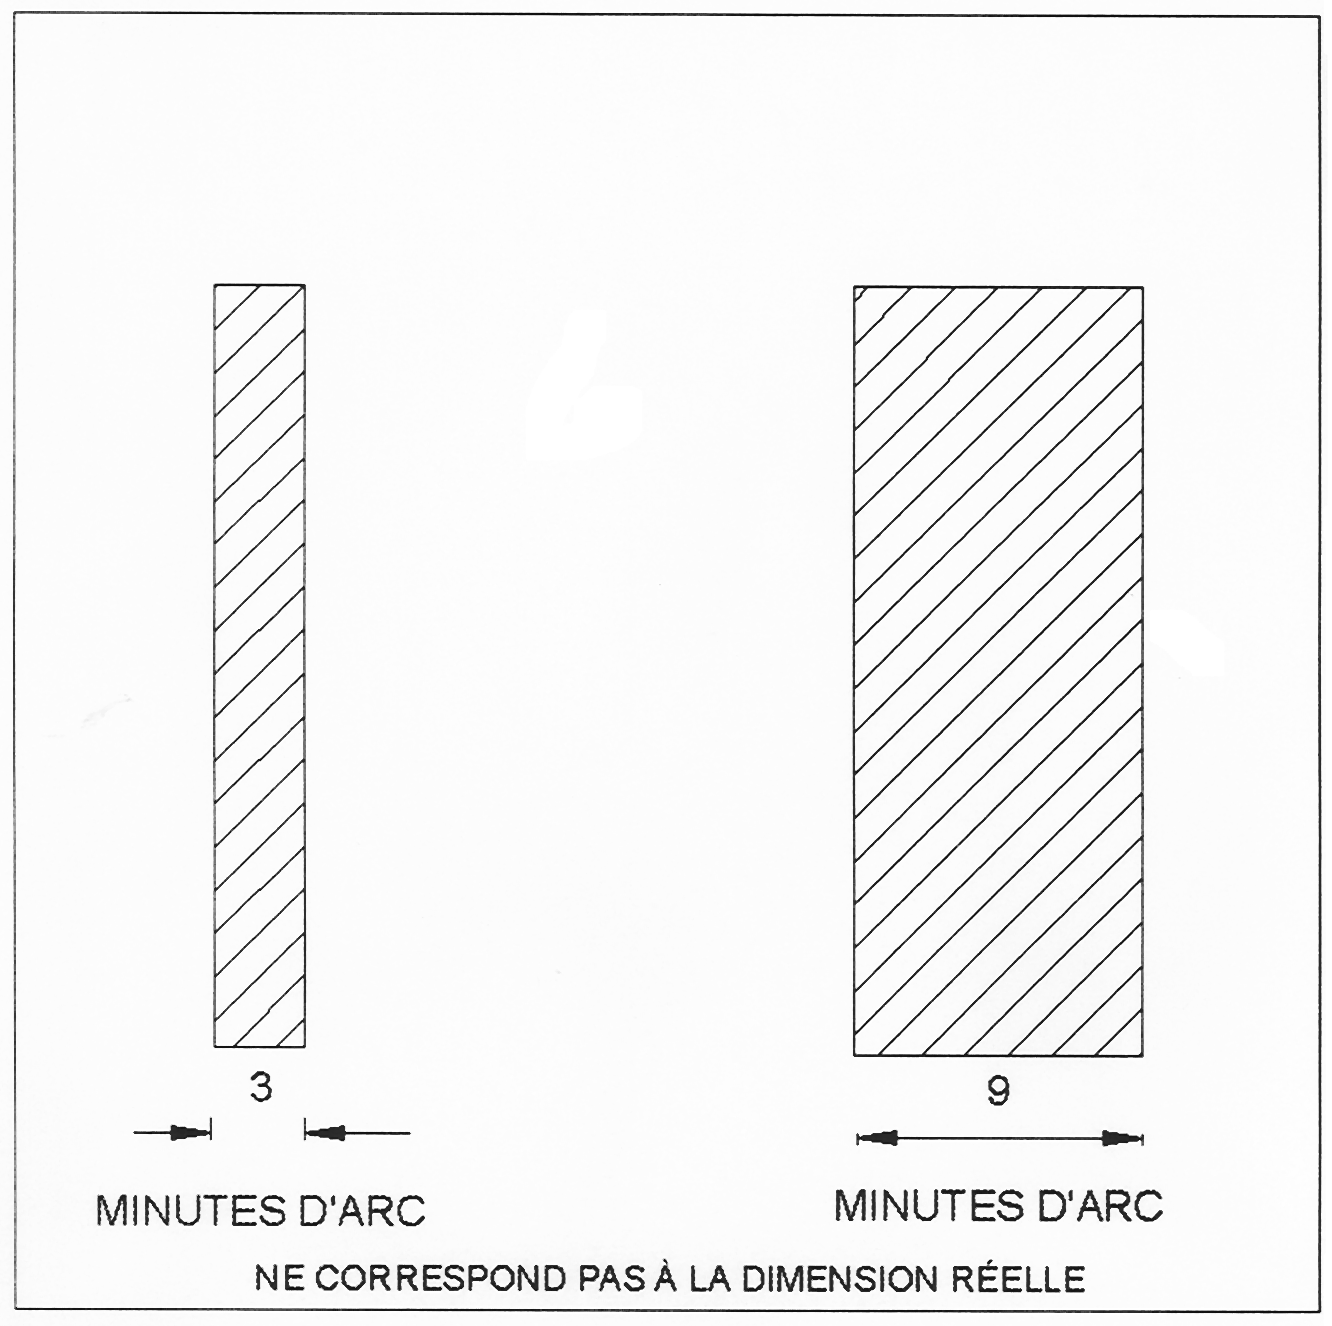 Diagramme montrant un tableau de comparaison entre 3 et 9 minutes d’arc